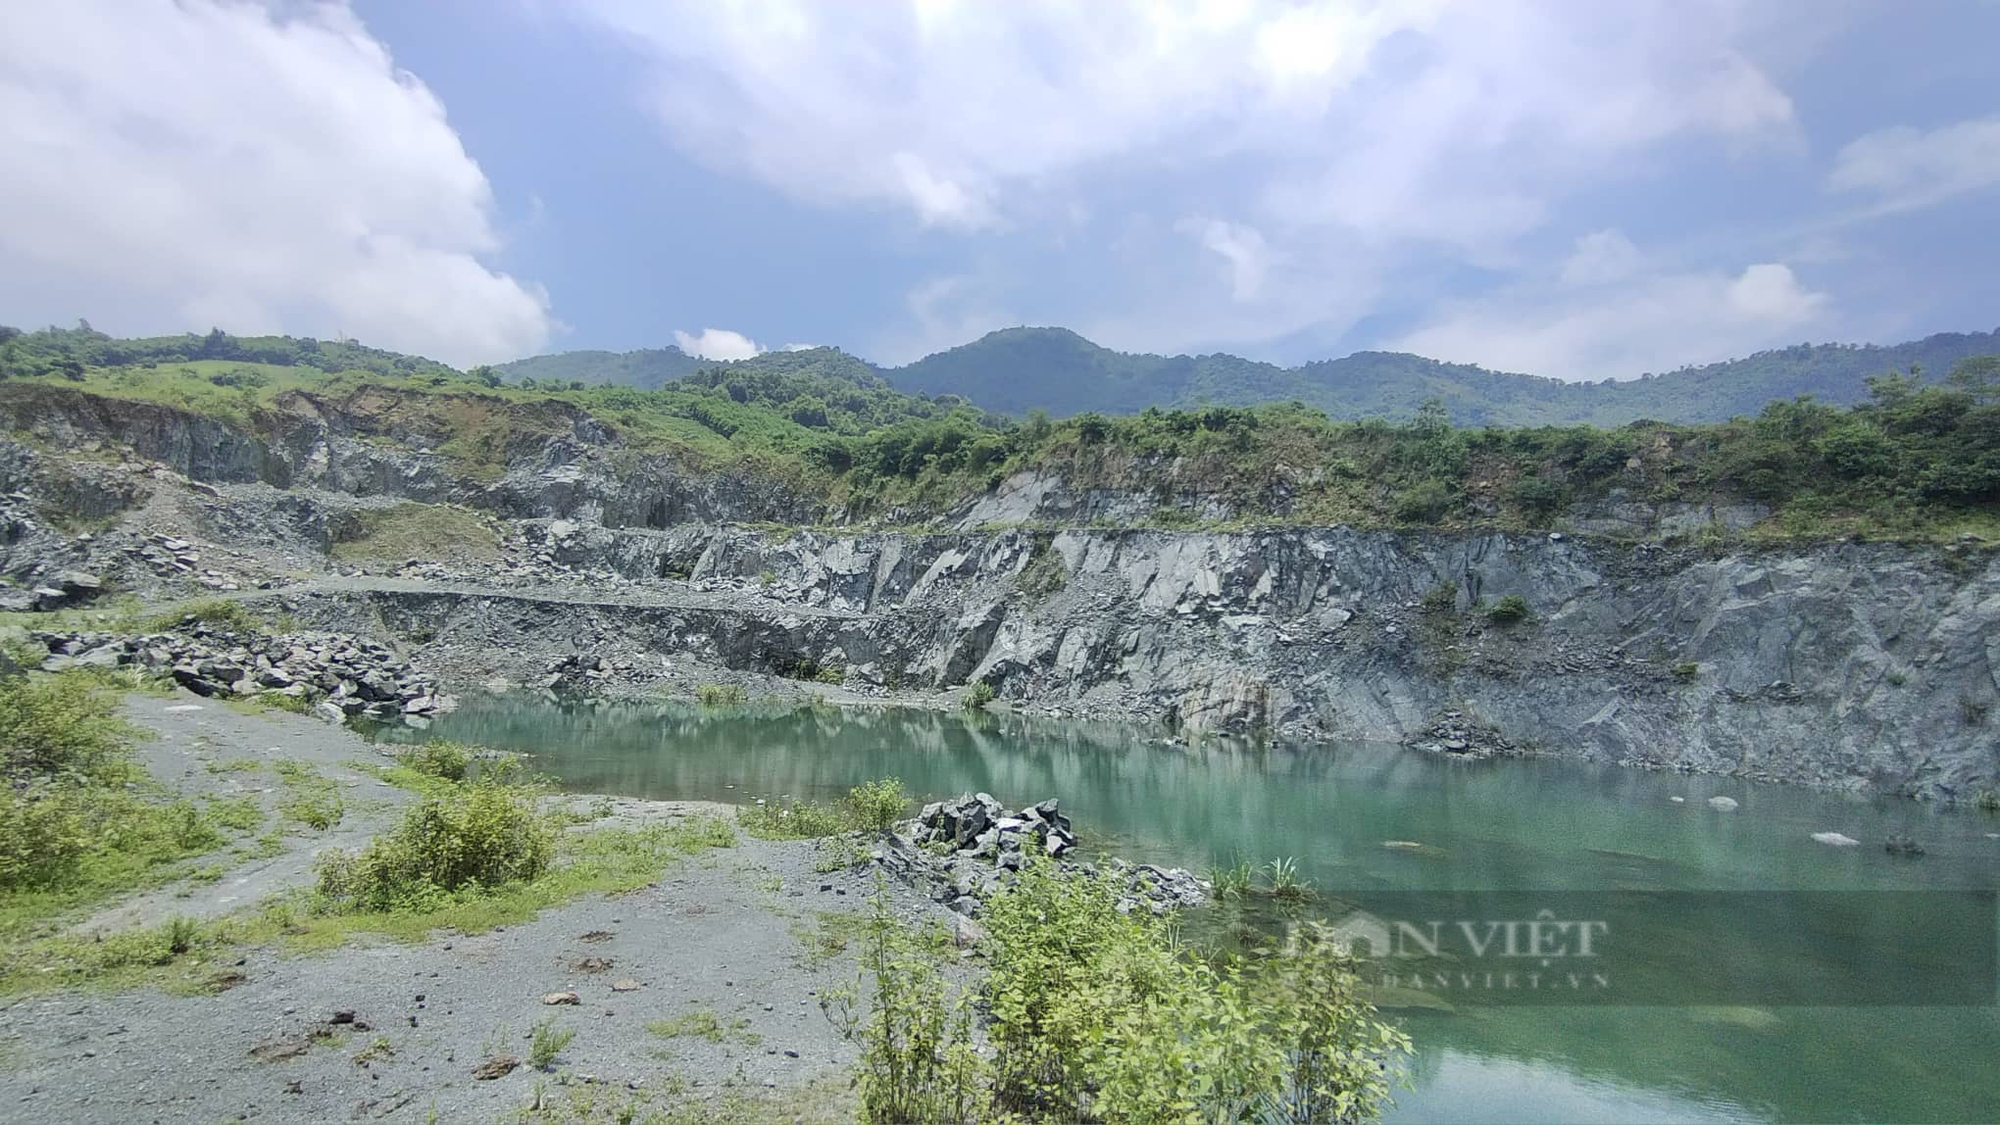 Hậu khai thác khoáng sản ở Hà Nội: Huyện Quốc Oai nêu rõ sai phạm của các ông chủ mỏ - Ảnh 4.